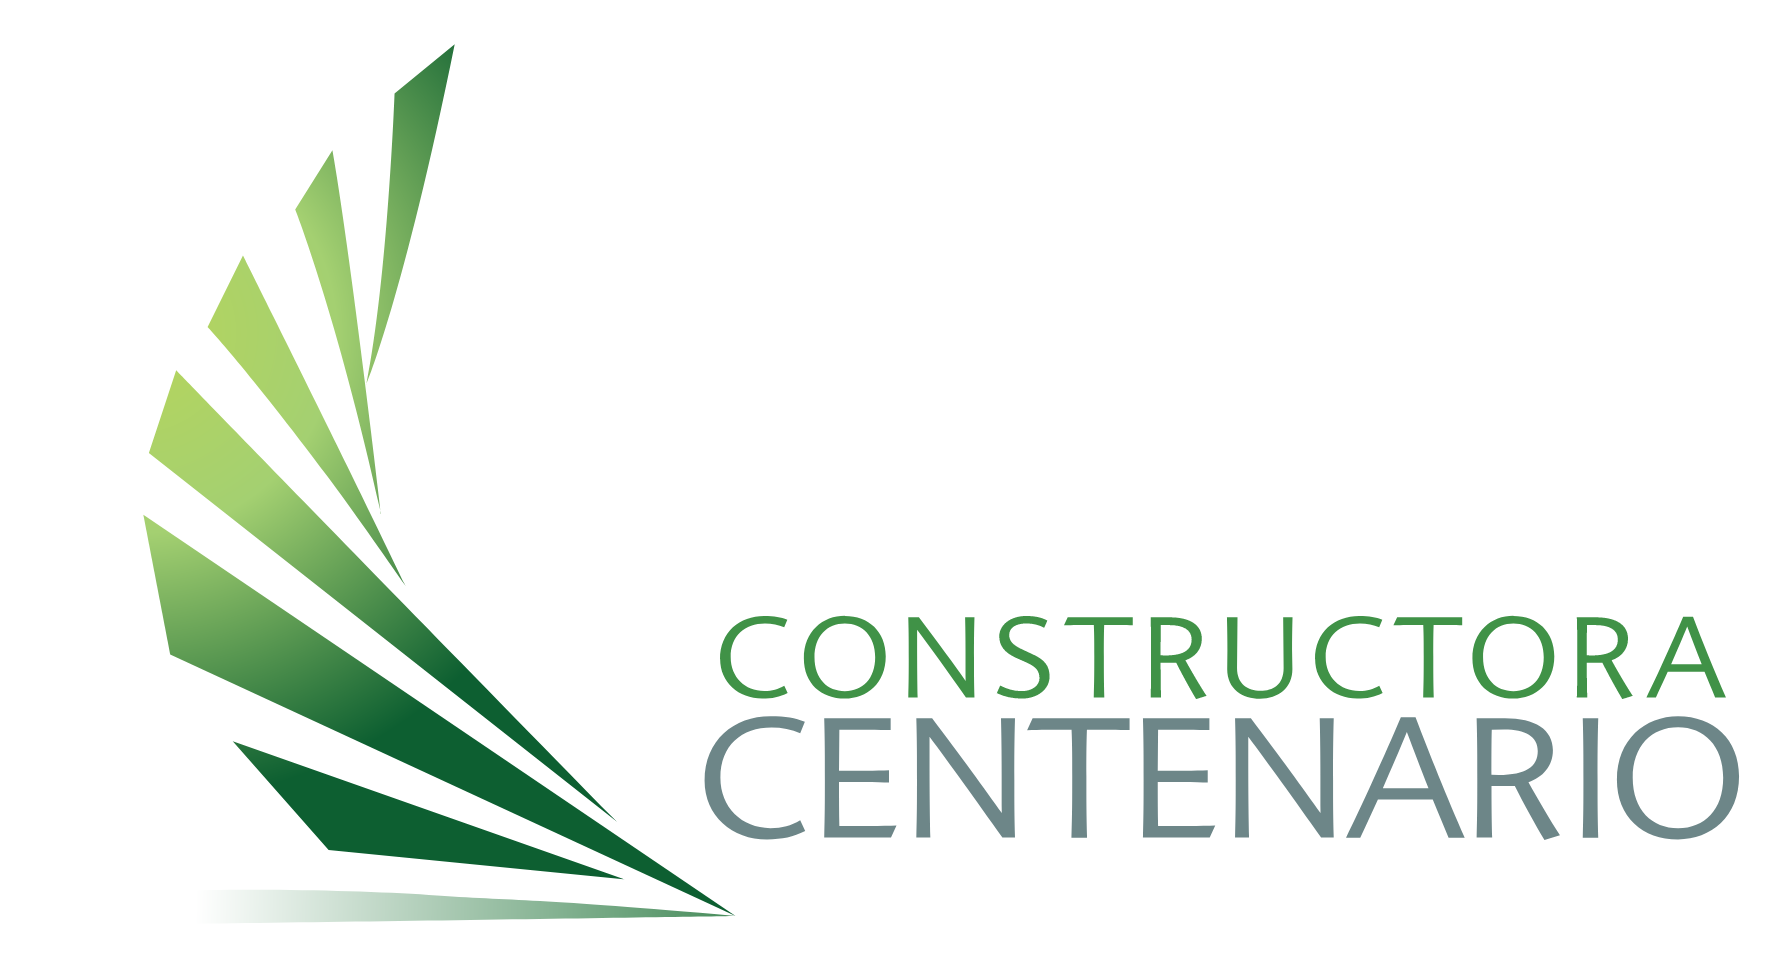 Constructora Centenario